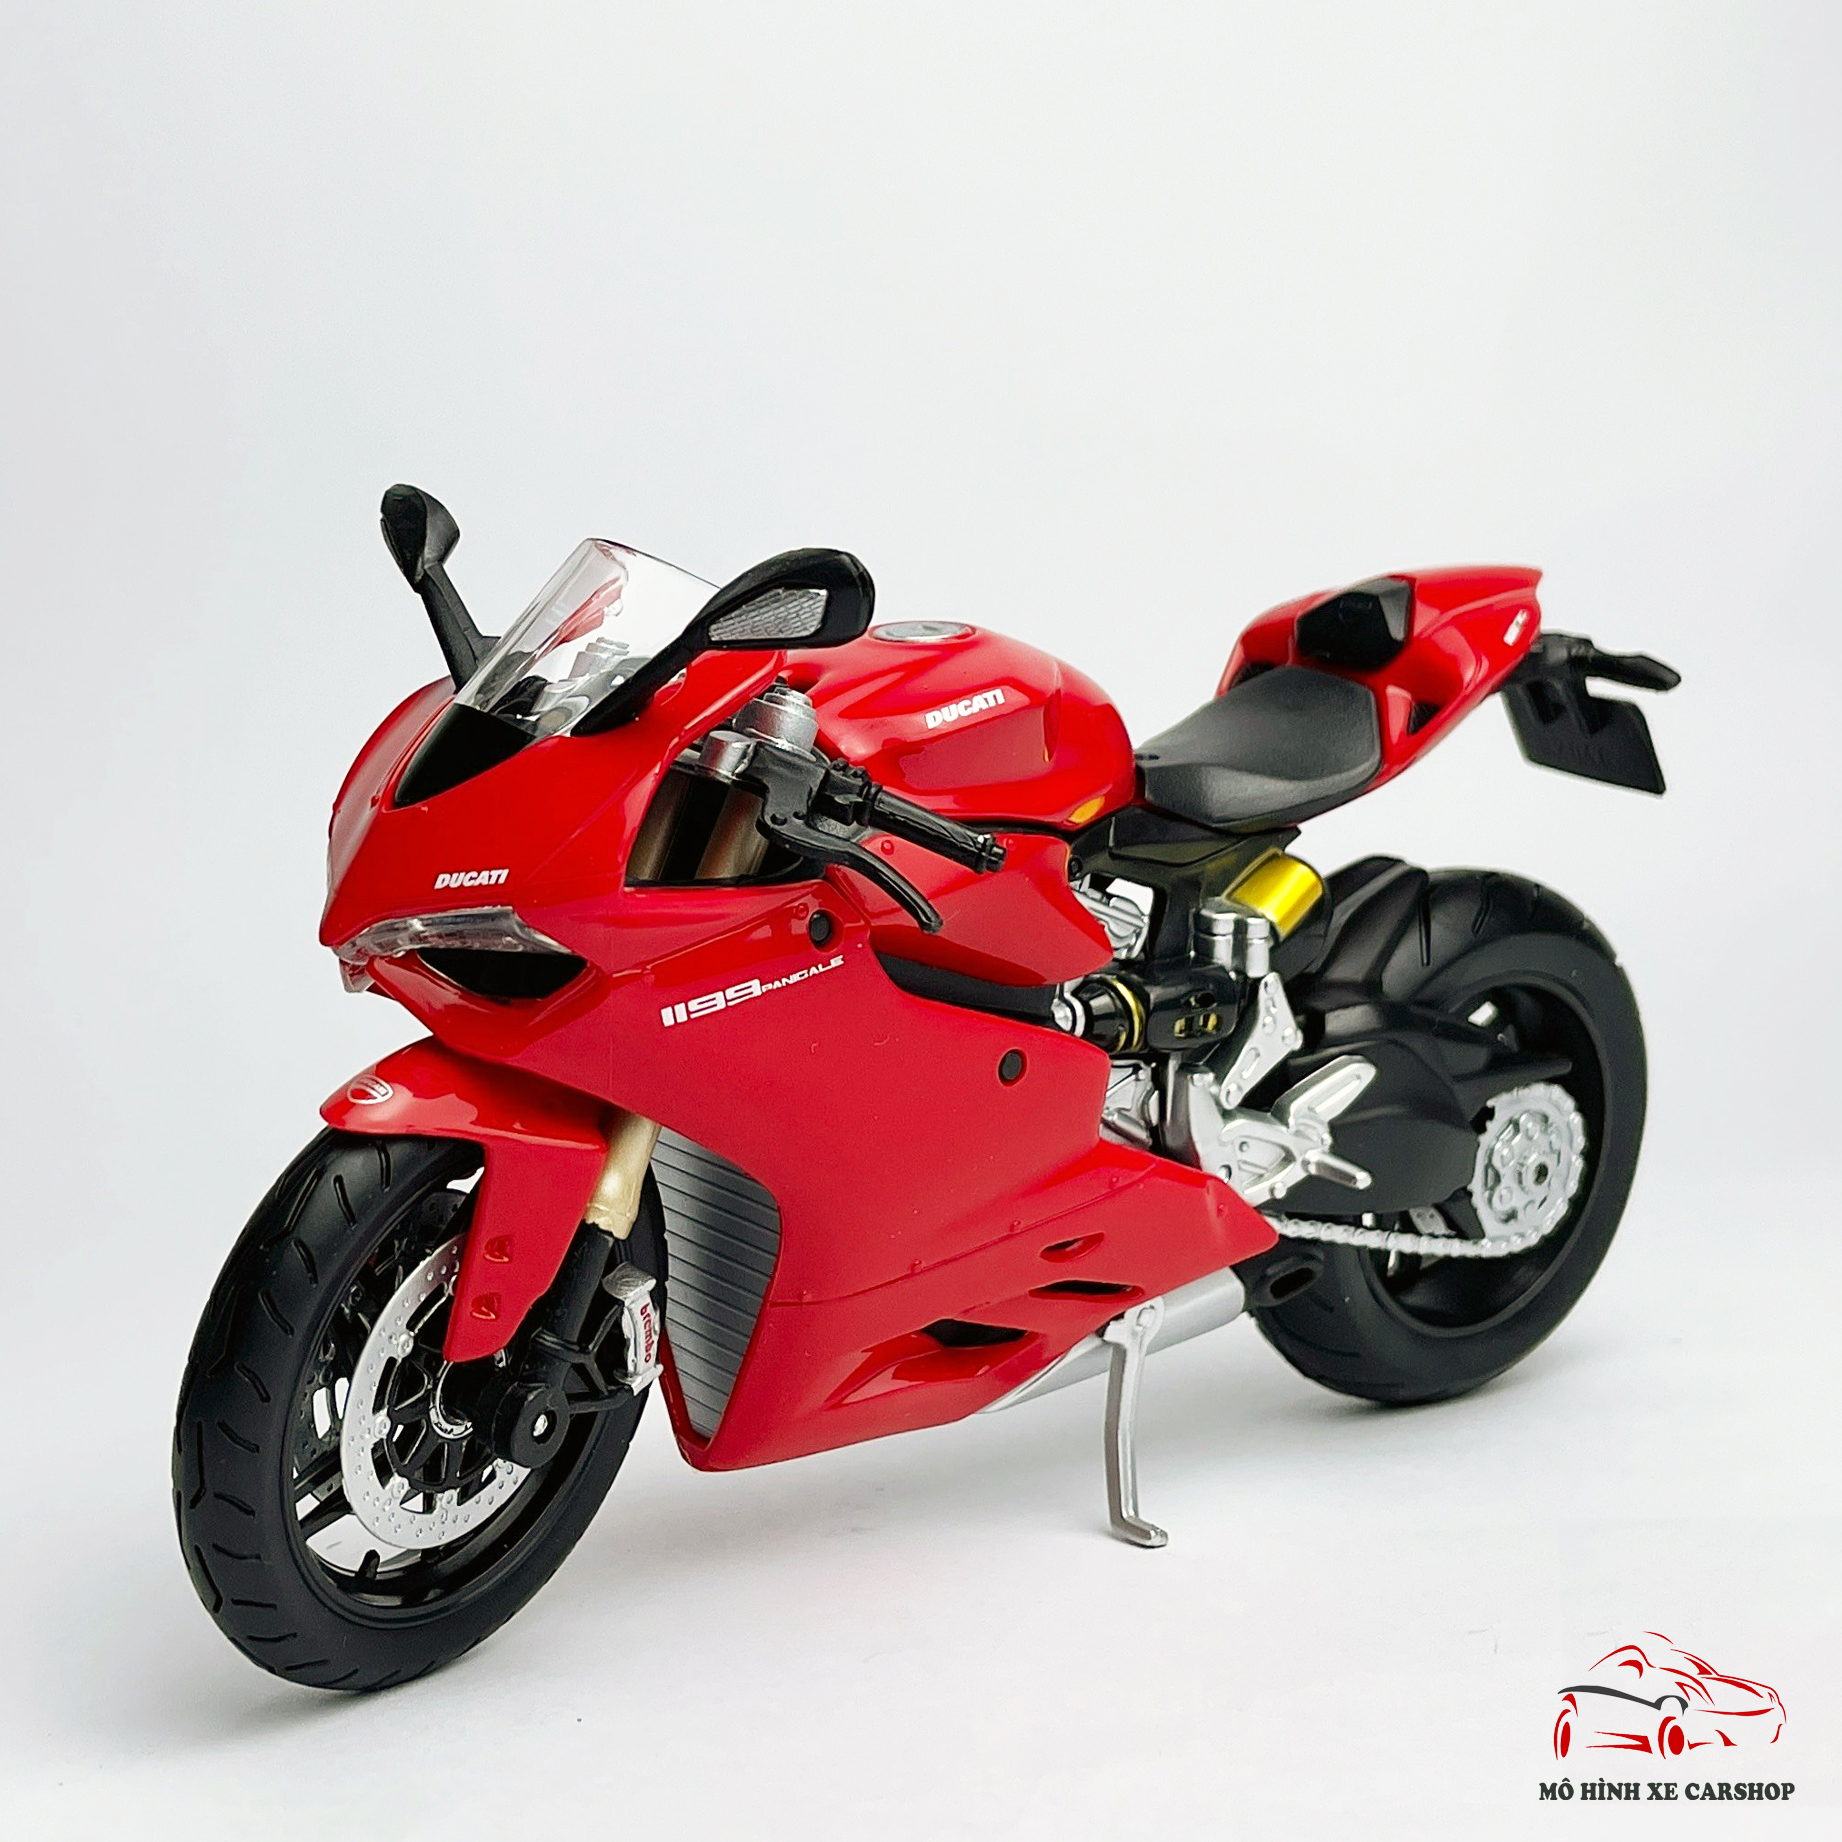 Xe mô hình siêu xe moto Ducati 1199 Panigale là một trong những món quà tốt nhất mà fan của Ducati không thể bỏ qua. Với ấn tượng về kích thước và chi tiết, chiếc xe này chắc chắn sẽ đem lại cho bạn một trải nghiệm không thể nào quên được.